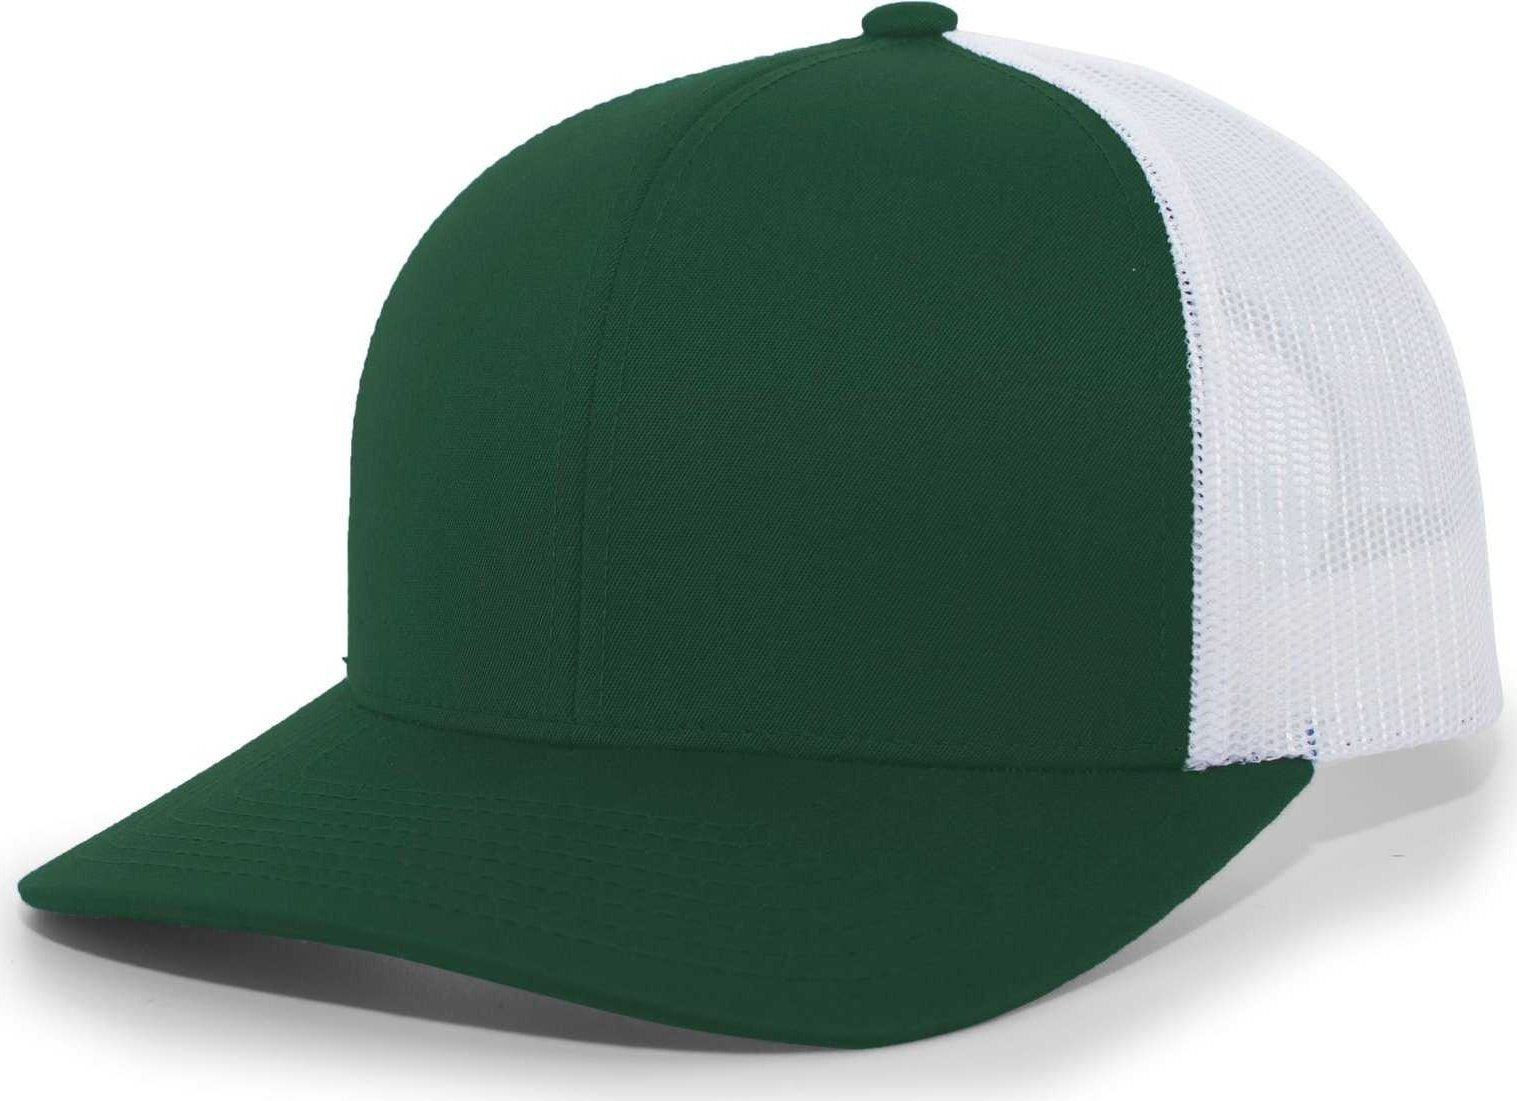 Pacific Headwear 104C Trucker Snapback Cap - Dark Green White - HIT a Double